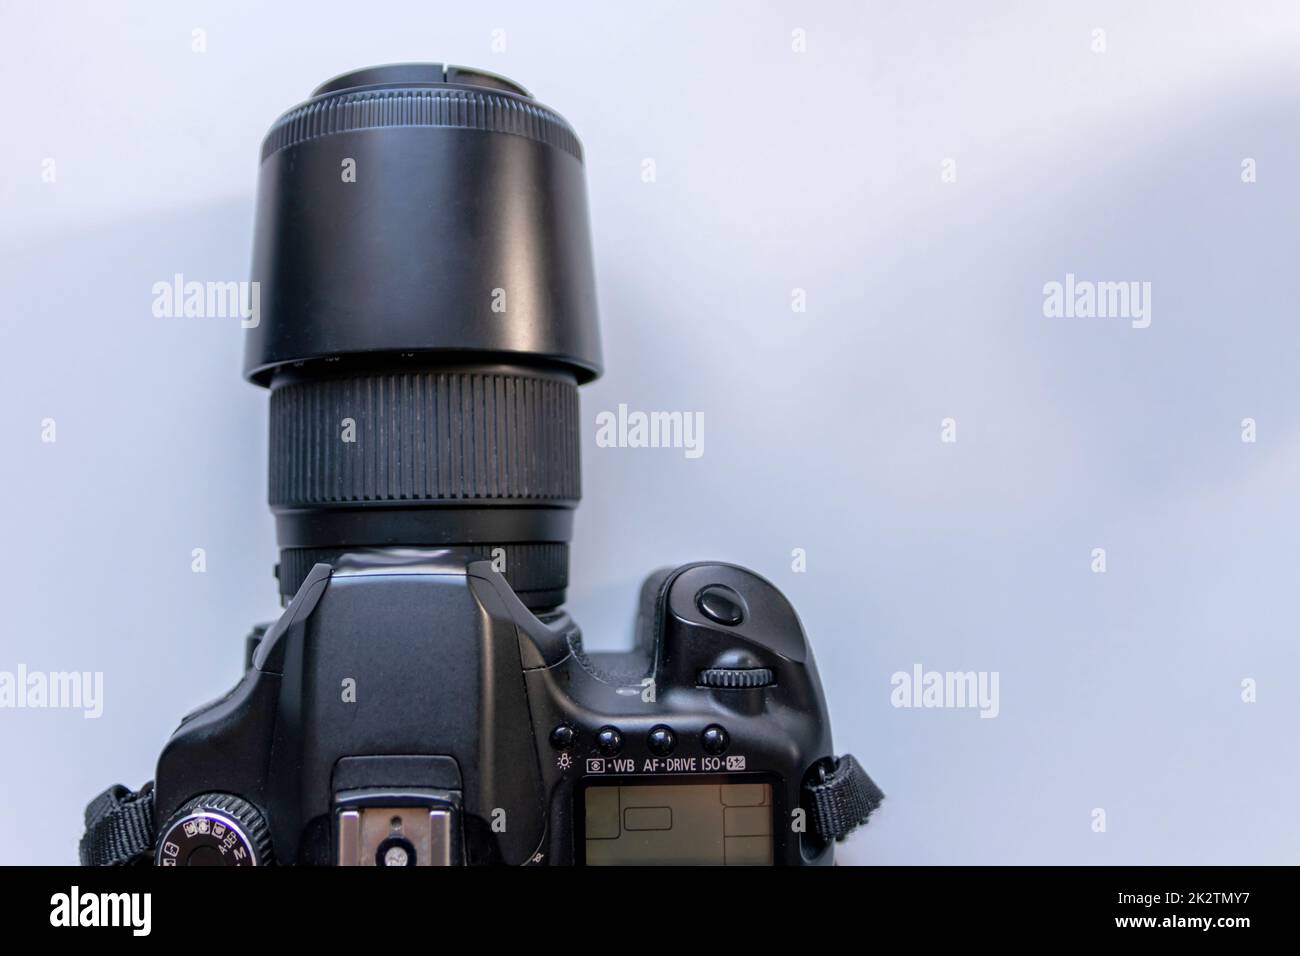 Professionelle dslr-Kameraausrüstung mit 70-300-mm-Tele-Zoomobjektiv mit Weitwinkelobjektiv in Makro-Nahaufnahme zeigt Details der Fotoausrüstung für Studioaufnahmen und Porträtaufnahmen von Wildtieren an Stockfoto